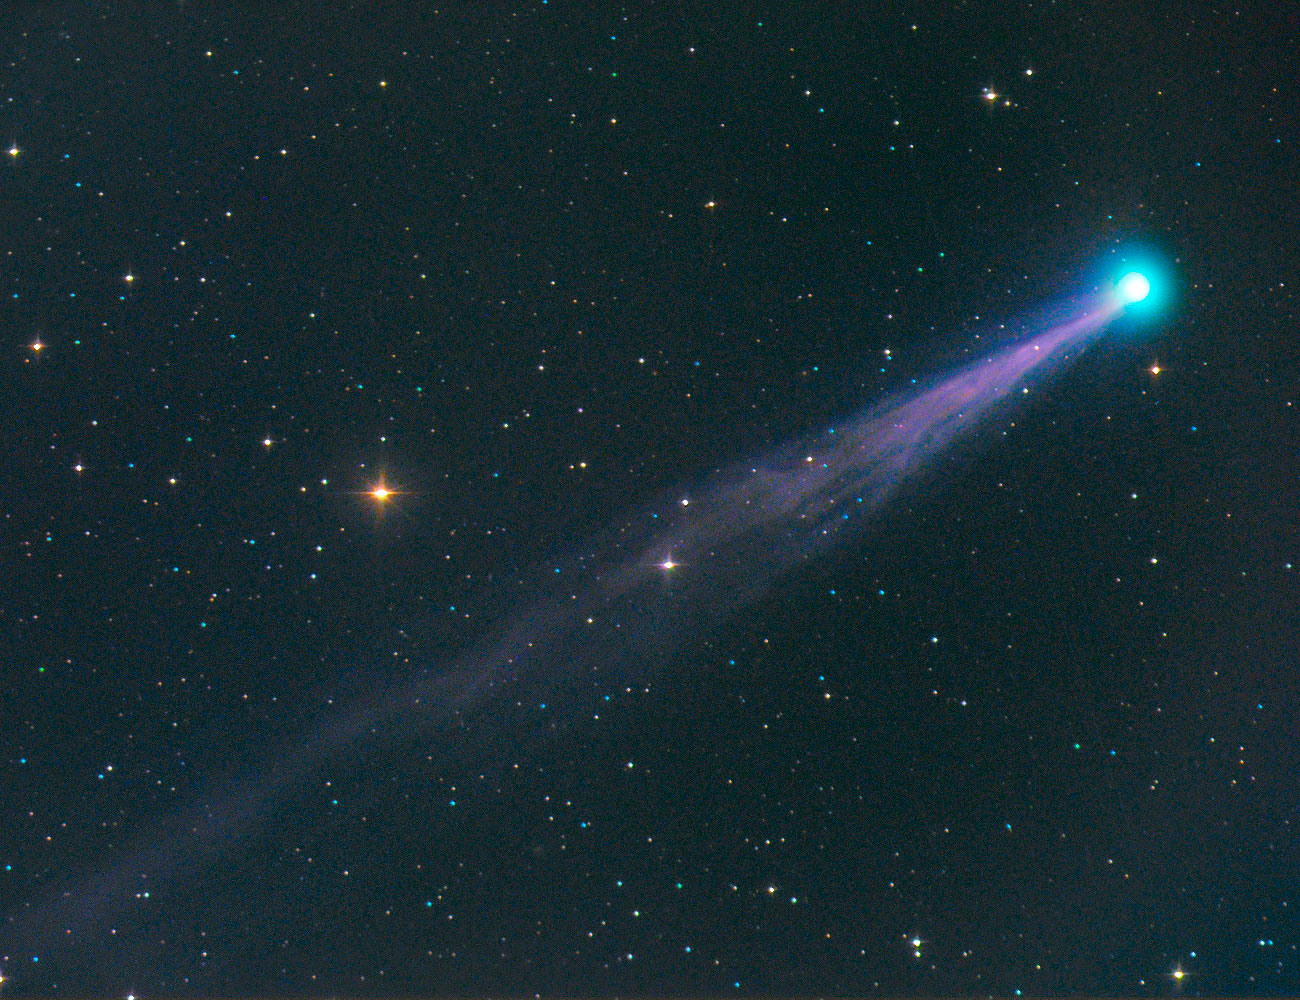 Comet SWAN Brightens